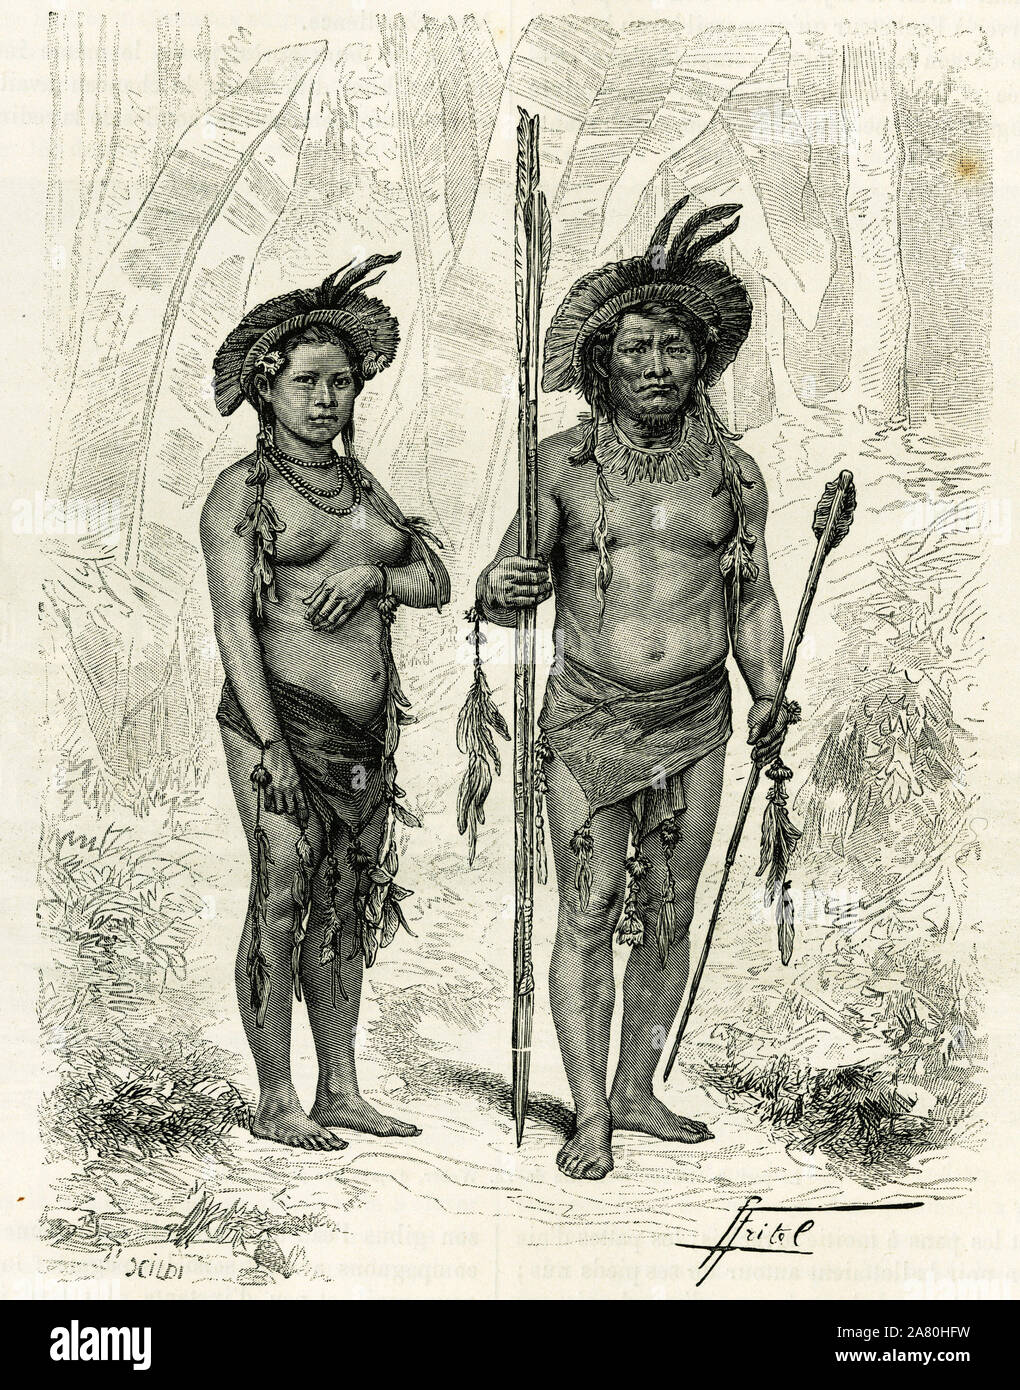 Sauvages du Rio Branco (Bresil). Gravure de P. Frital, pour illustrer le recit 'Amazone et cordilleres', 1879-1882, par Charles Wiener (1851-1919) dip Stock Photo